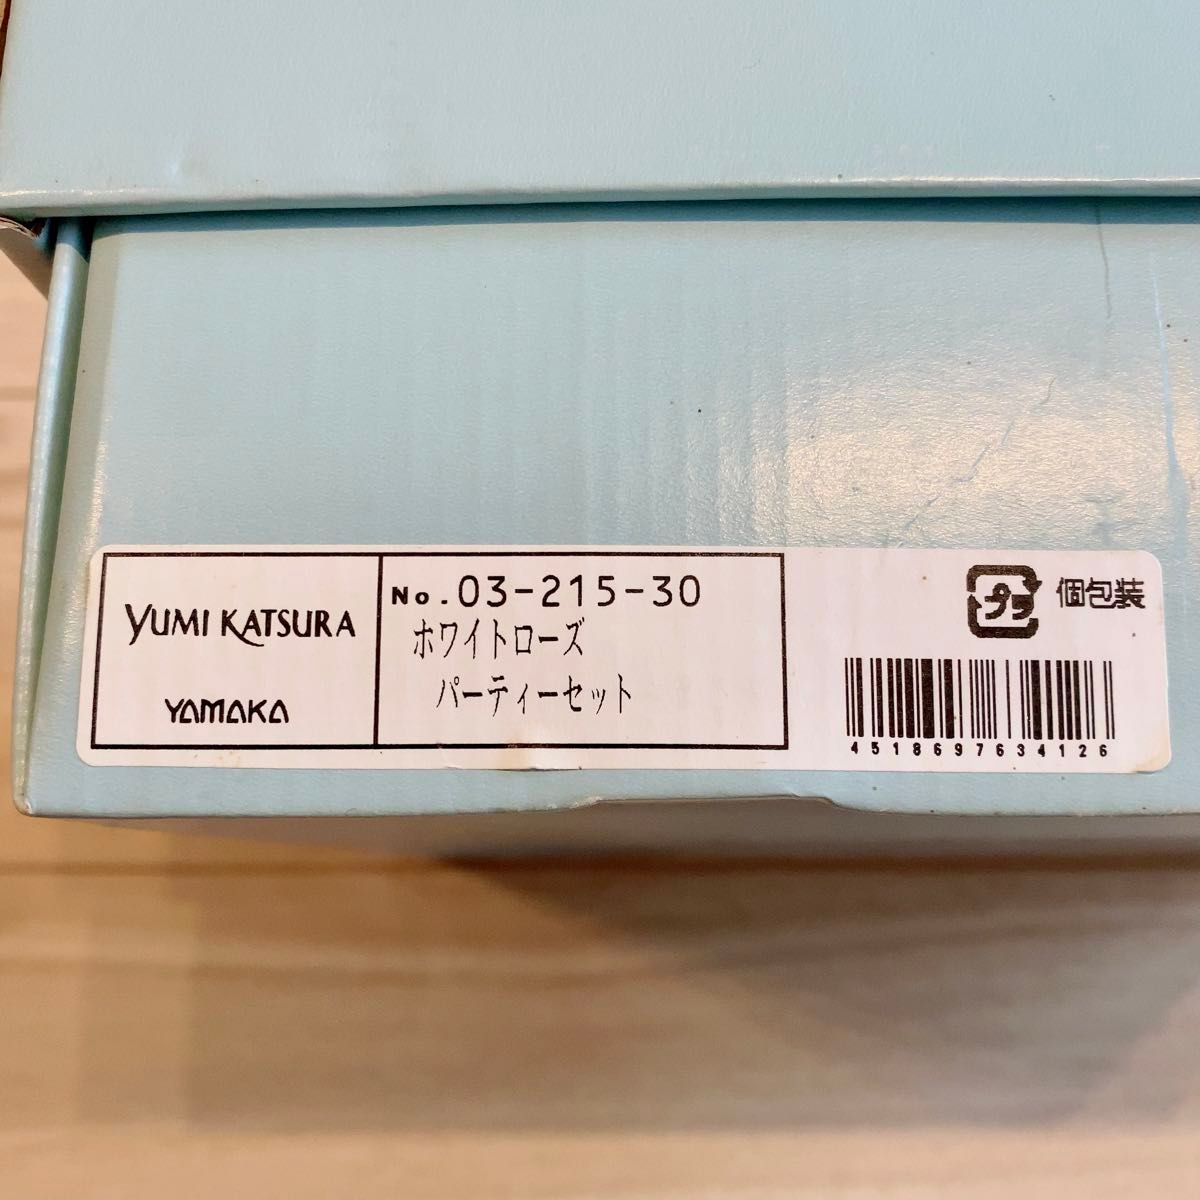 【送料込】【YUMI KATSURA】ホワイトローズ パーティーセット 皿